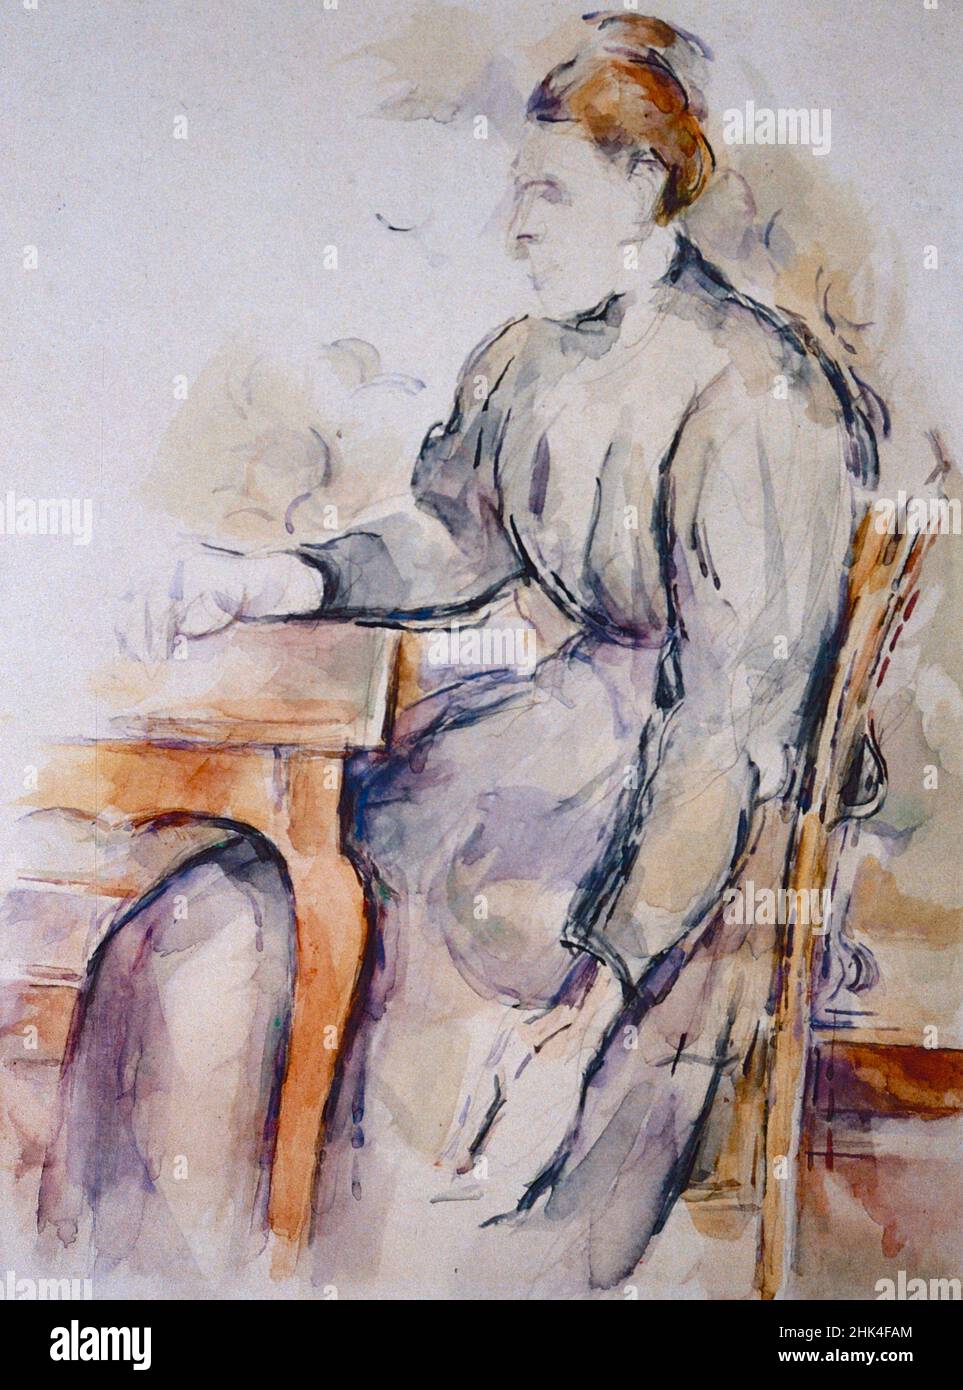 Portrait de Madame Cézanne assis, peinture de l'artiste français Paul Cézanne, 1892 Banque D'Images